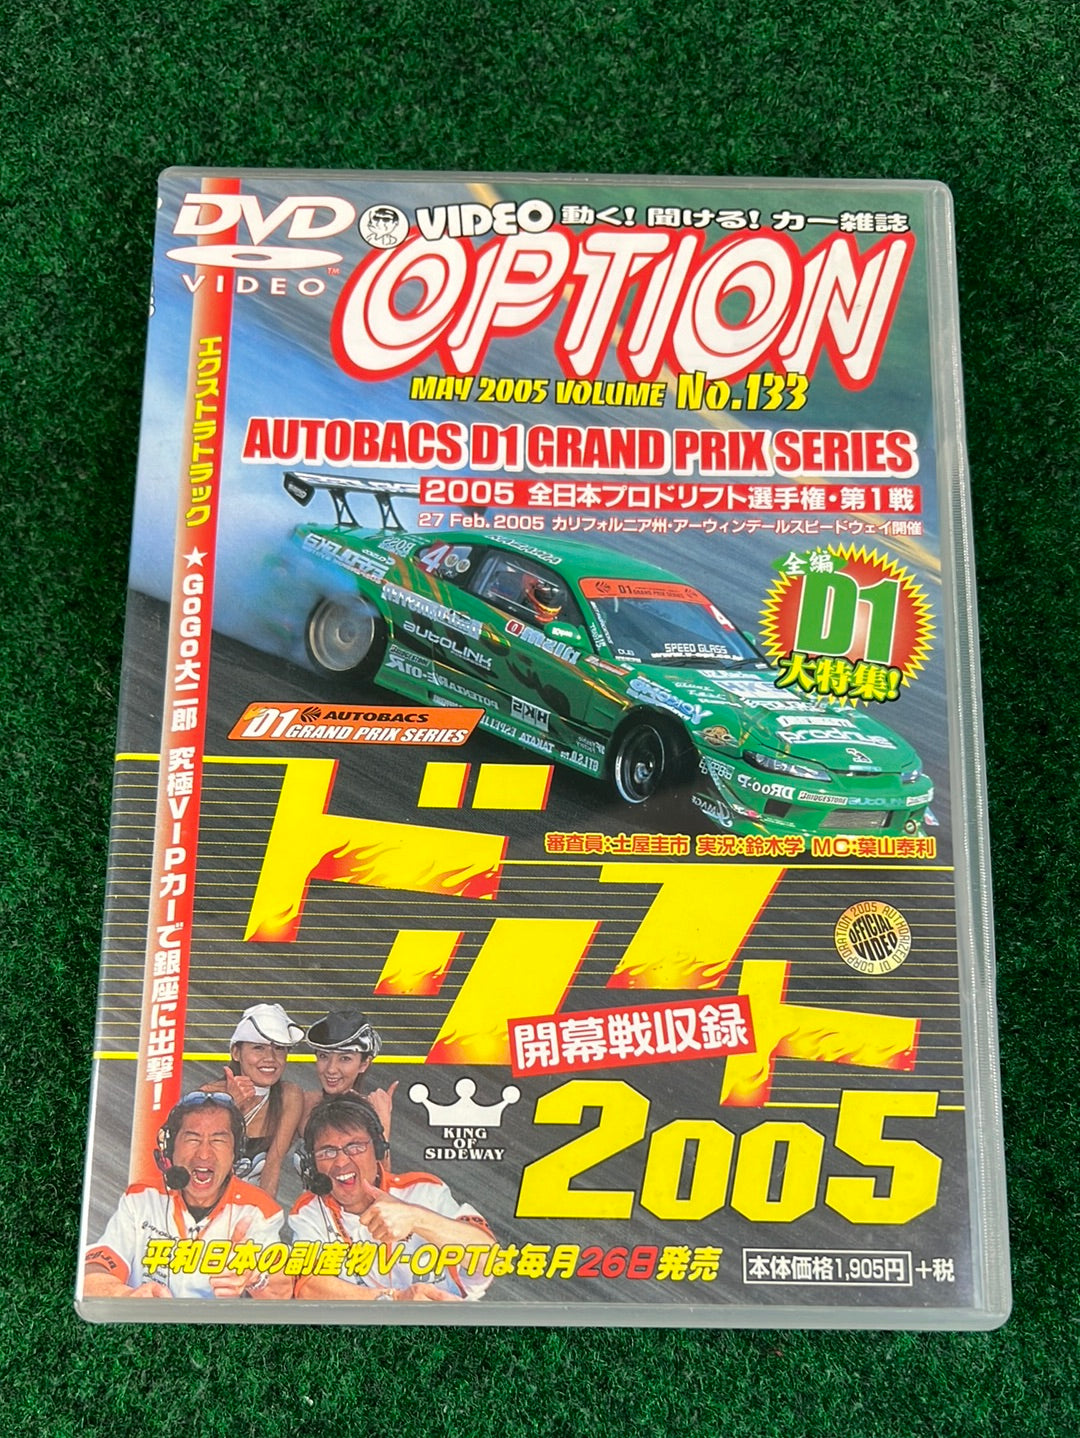 Option Video DVD - May 2005 Vol. 133 DVD